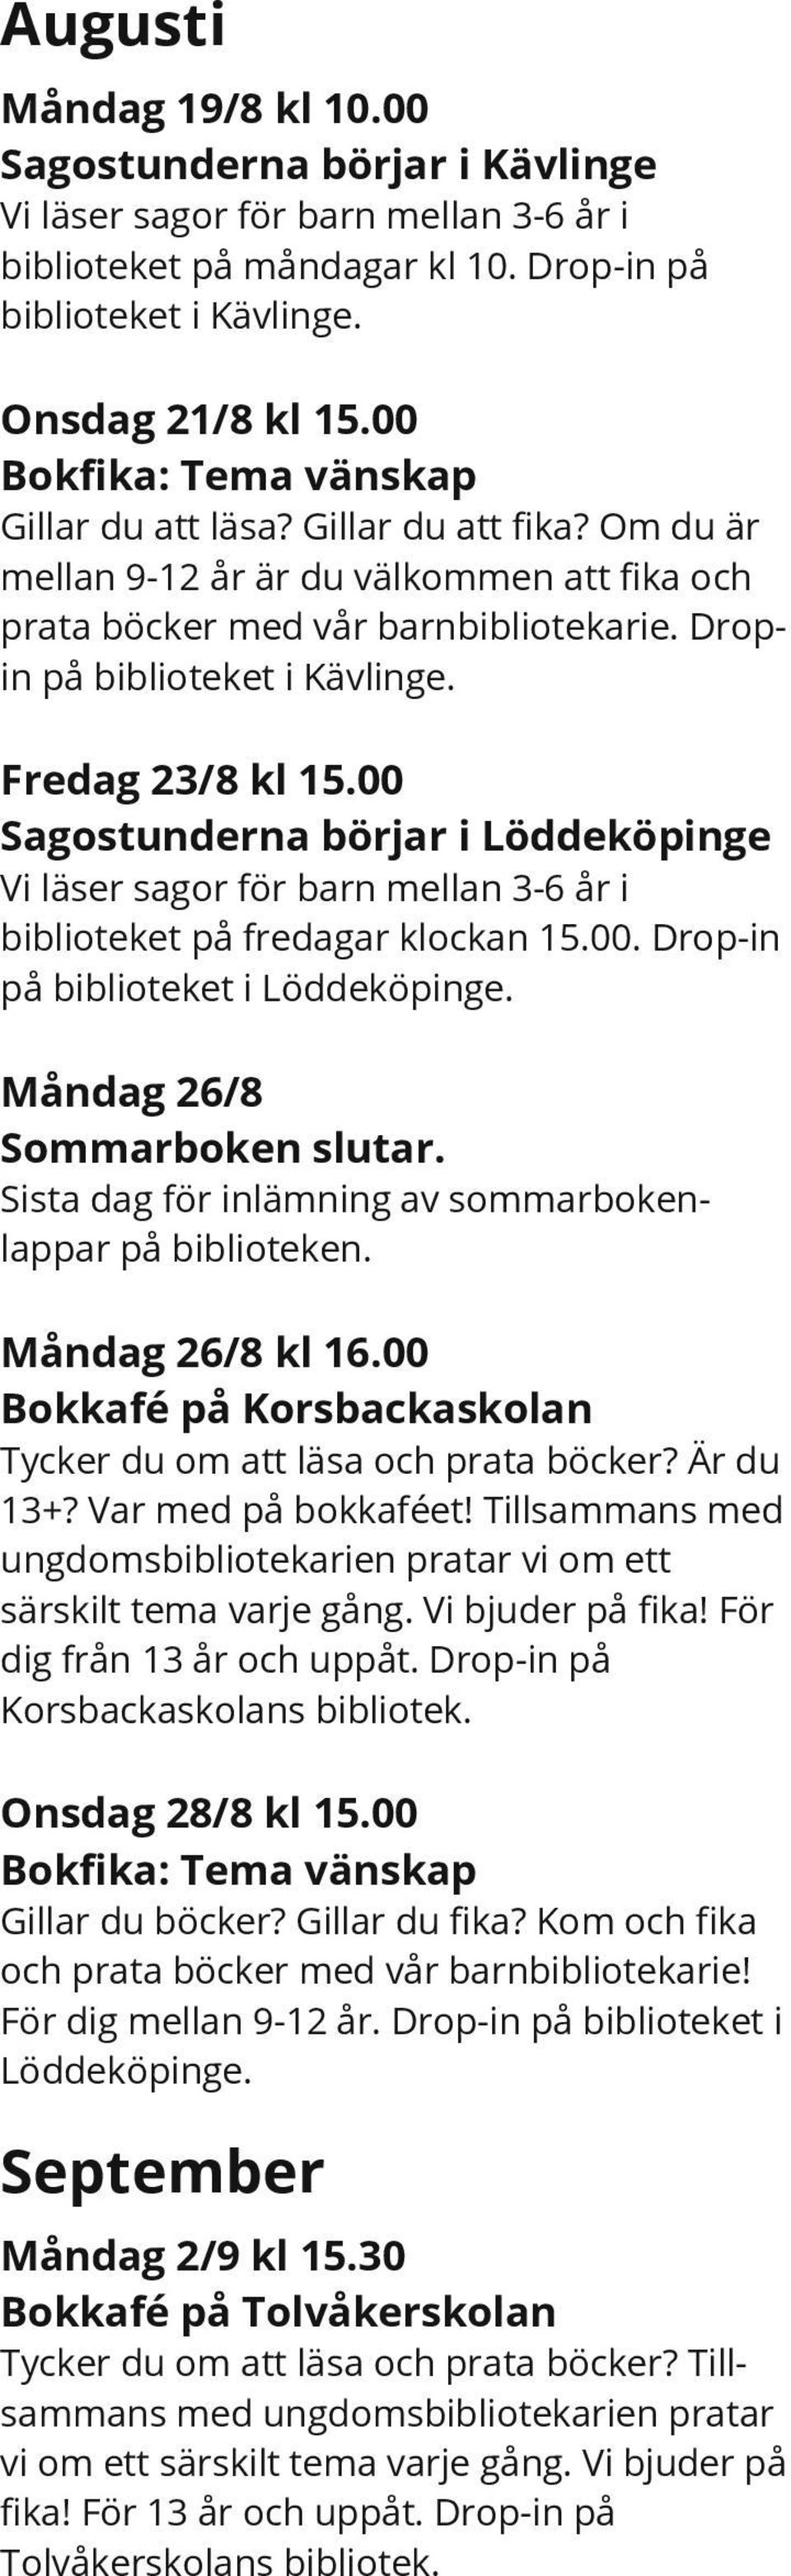 Fredag 23/8 kl 15.00 Sagostunderna börjar i Löddeköpinge Vi läser sagor för barn mellan 3-6 år i biblioteket på fredagar klockan 15.00. Drop-in på biblioteket i Löddeköpinge.